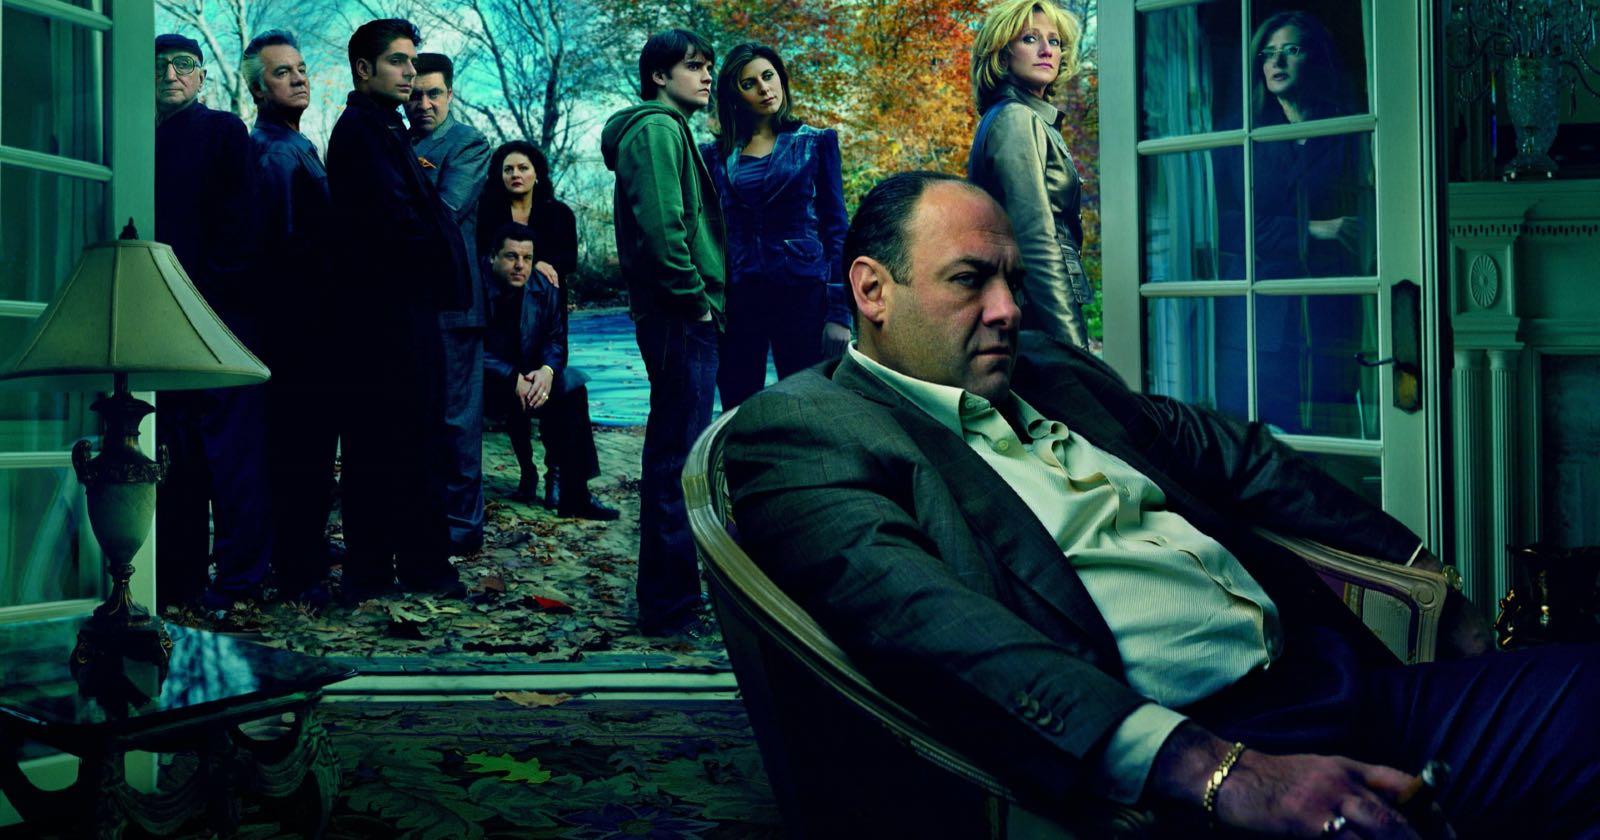 Elenco protagónico de la serie Los Sopranos, una de las 15 mejores series según IMDb.